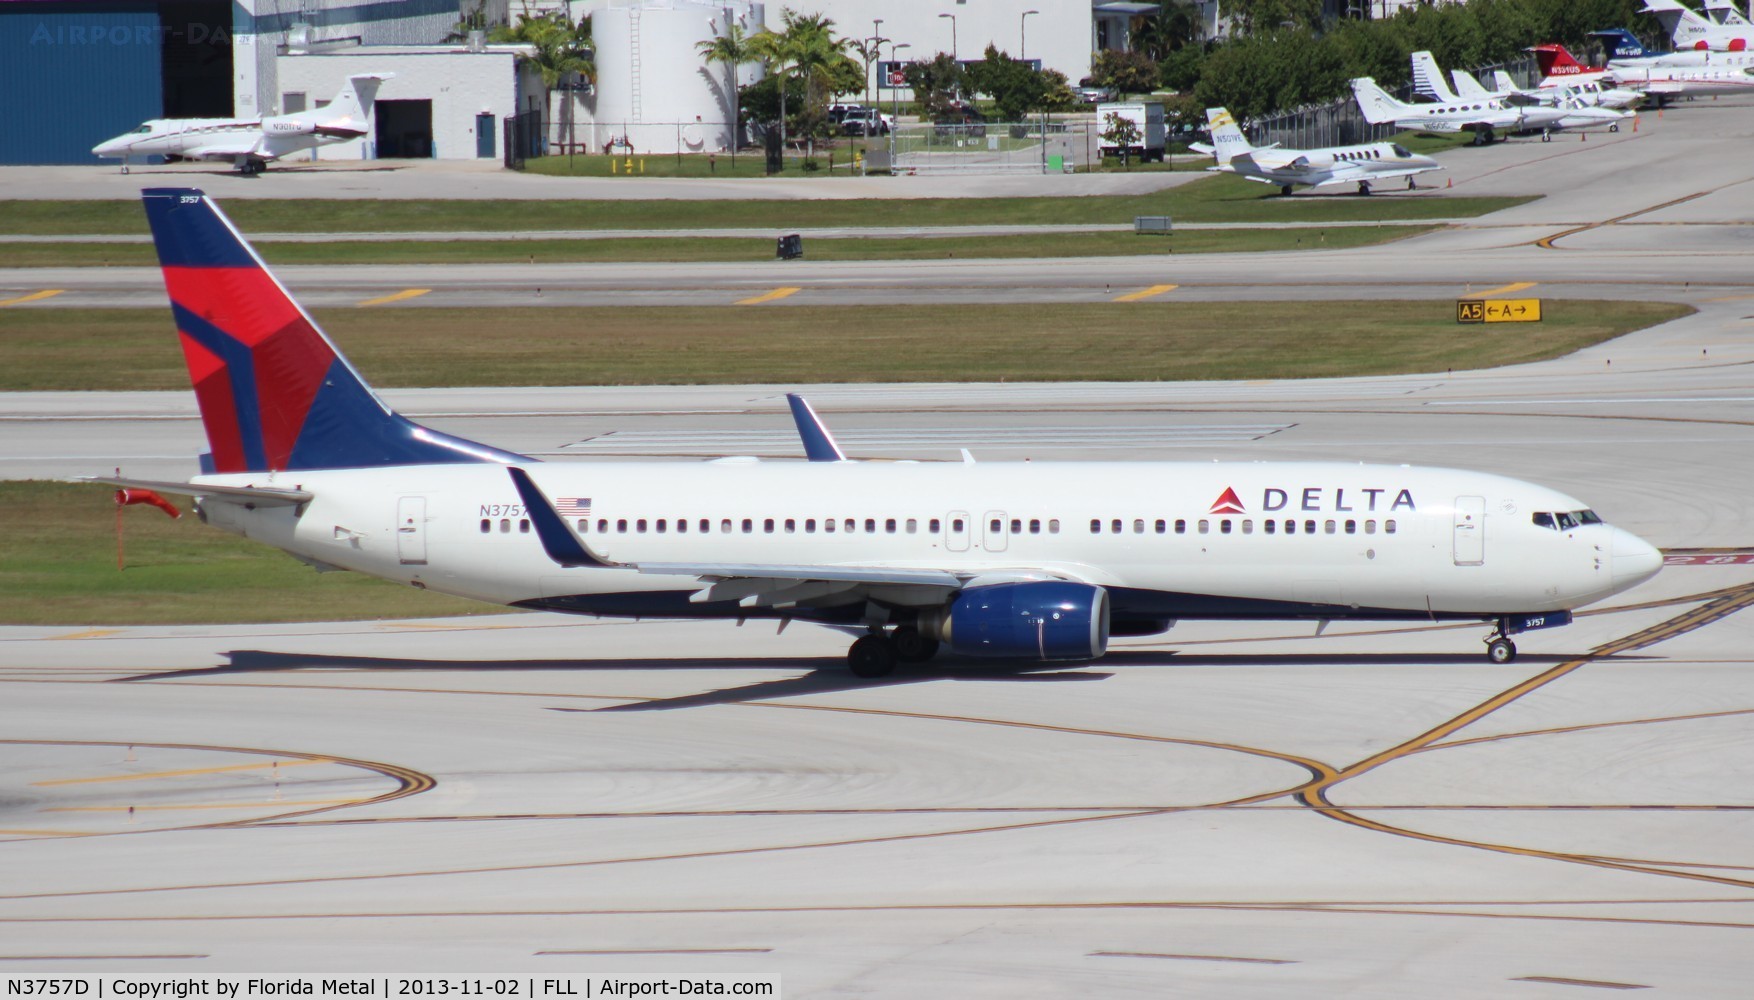 N3757D, 2001 Boeing 737-832 C/N 30813, Delta 737-800